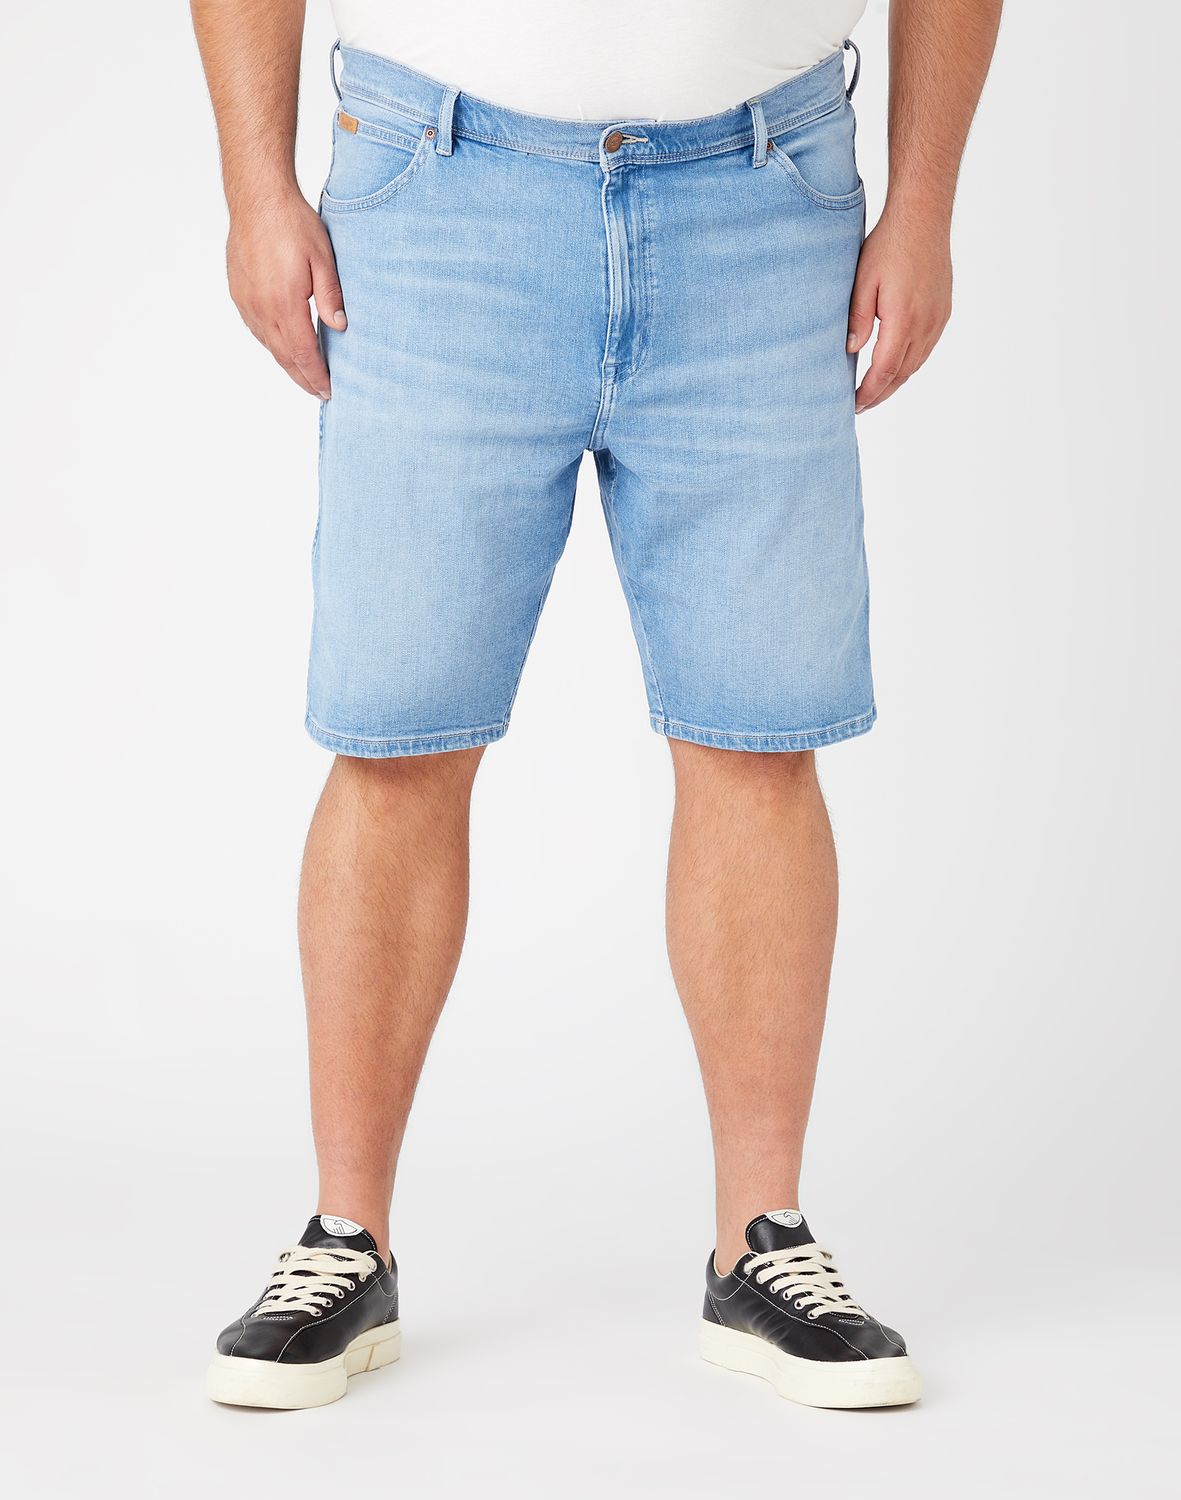 фото Шорты мужские wrangler texas shorts голубые 36